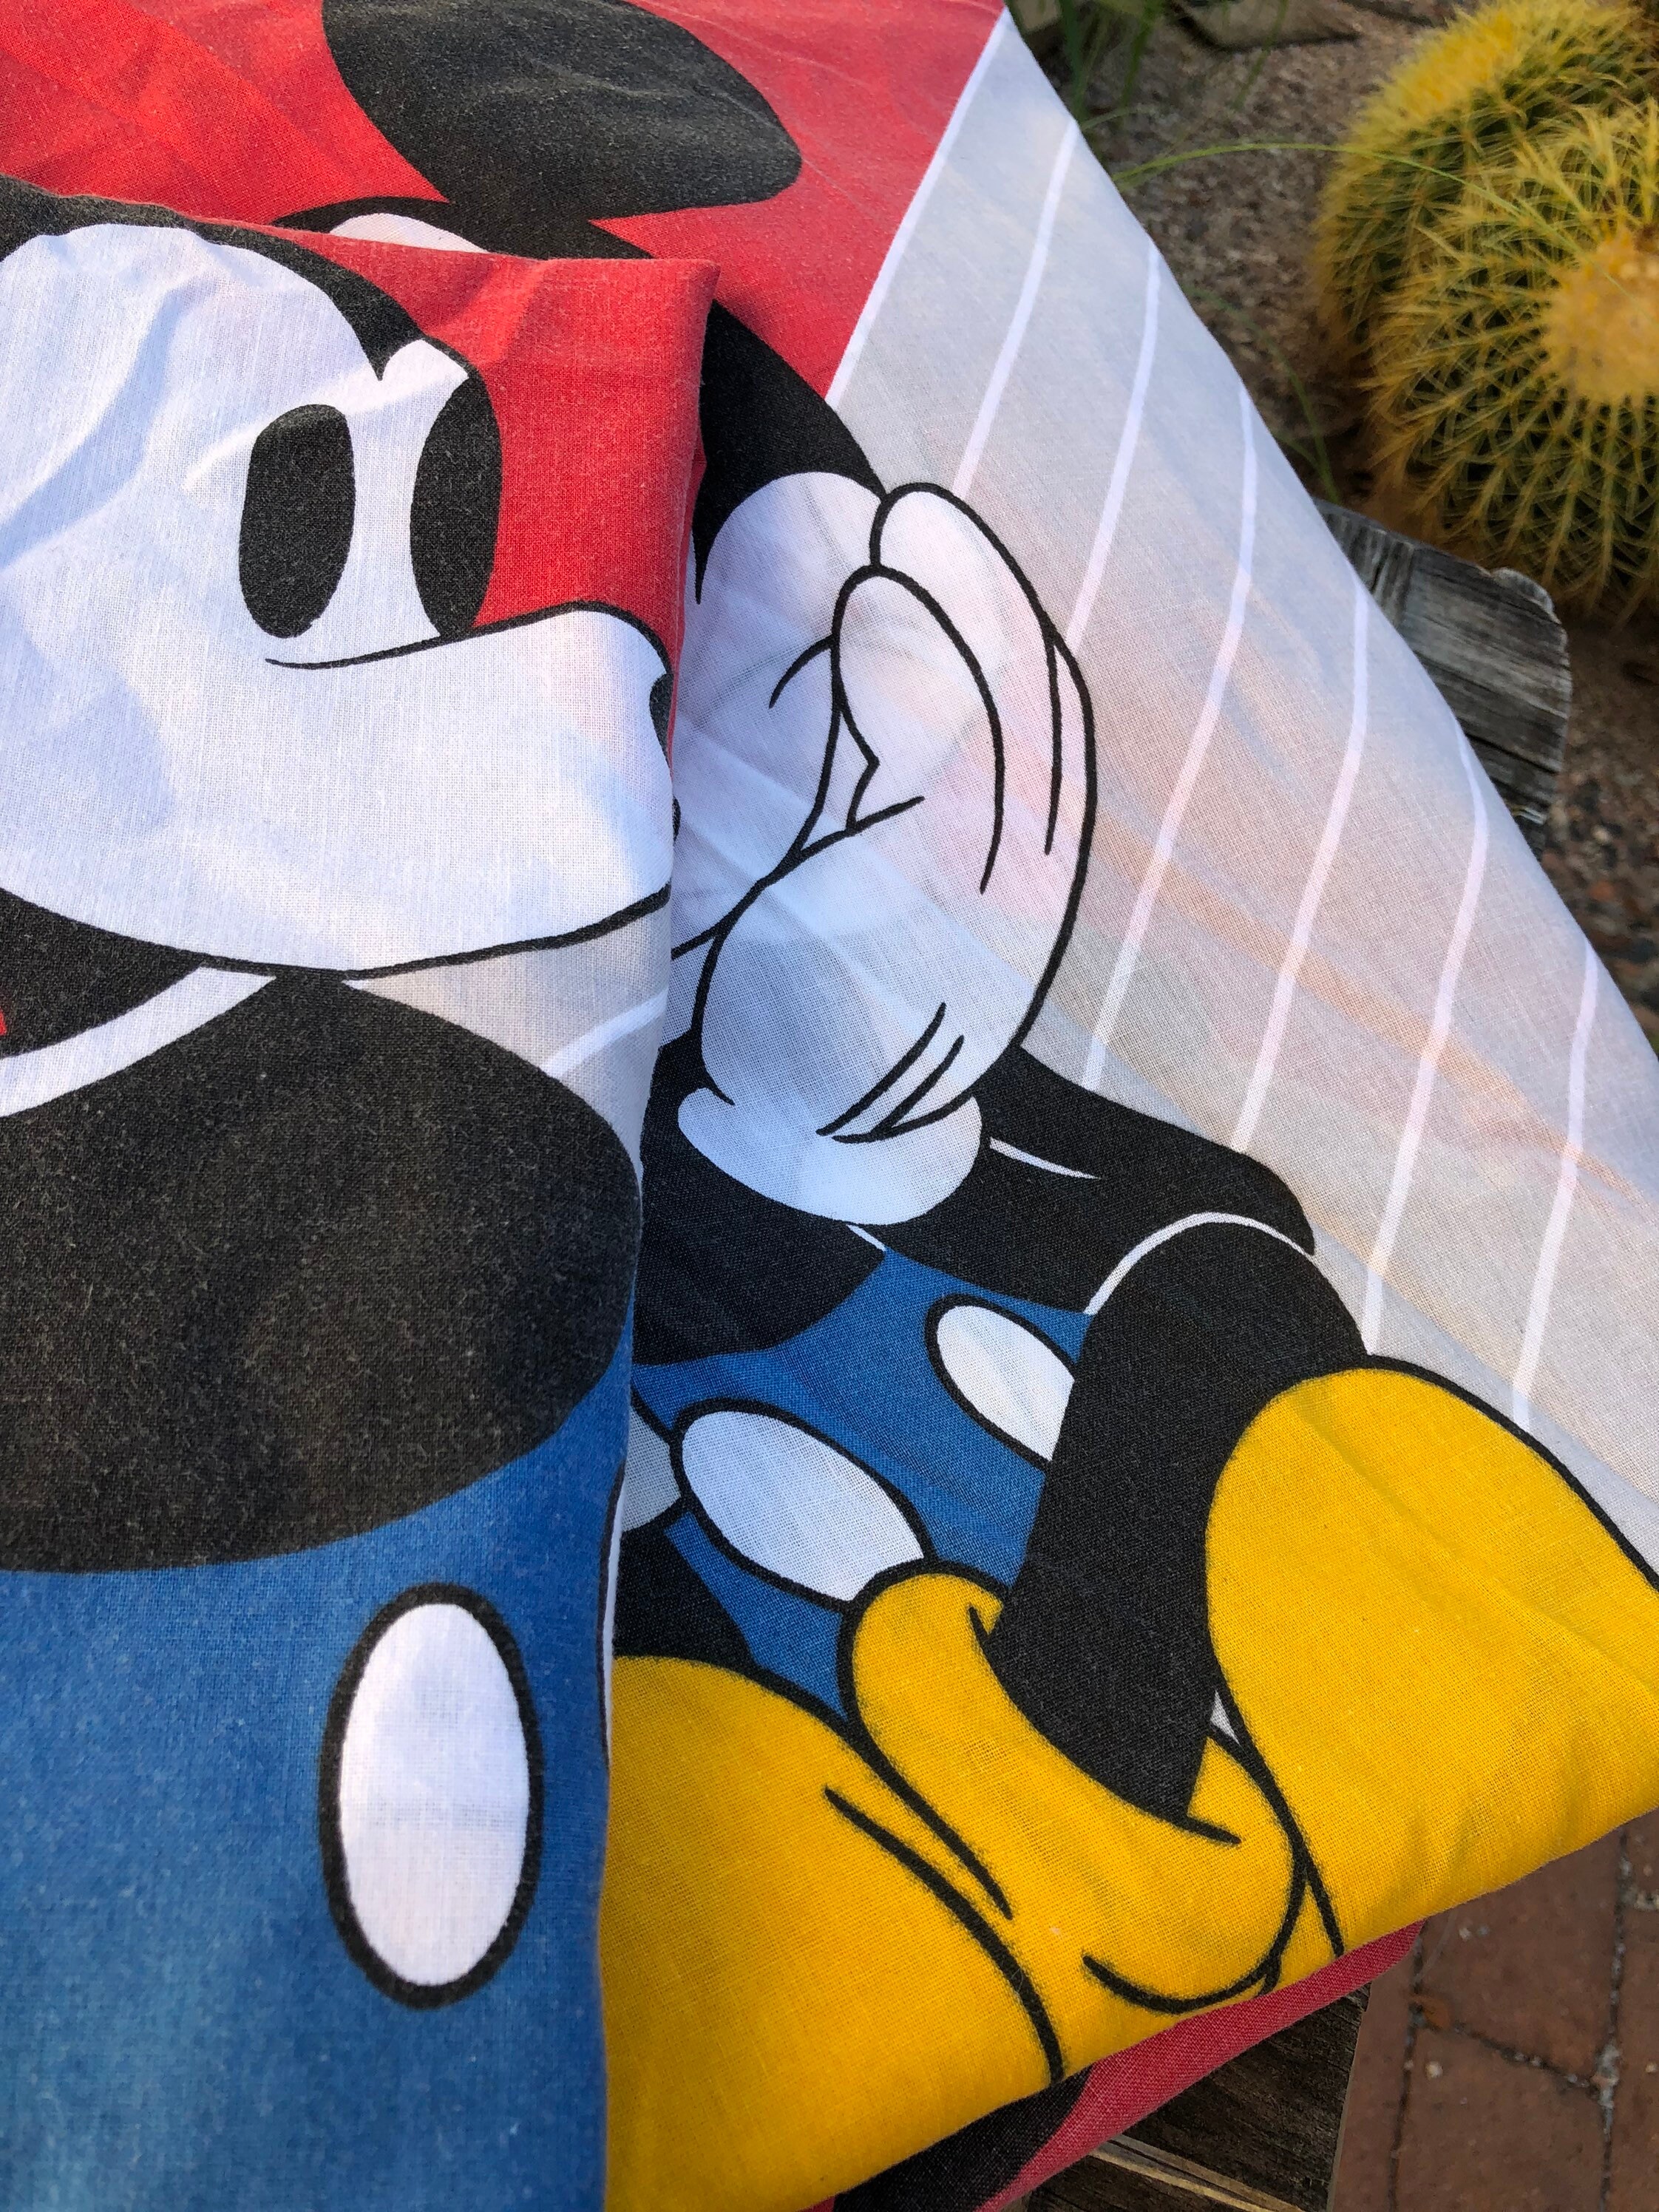 Disney Mickey Mouse Funhouse Crew - Juego de sábanas infantiles de 2  piezas, color azul, rojo, amarillo y blanco, divertido, pato Donald, Goofy  y